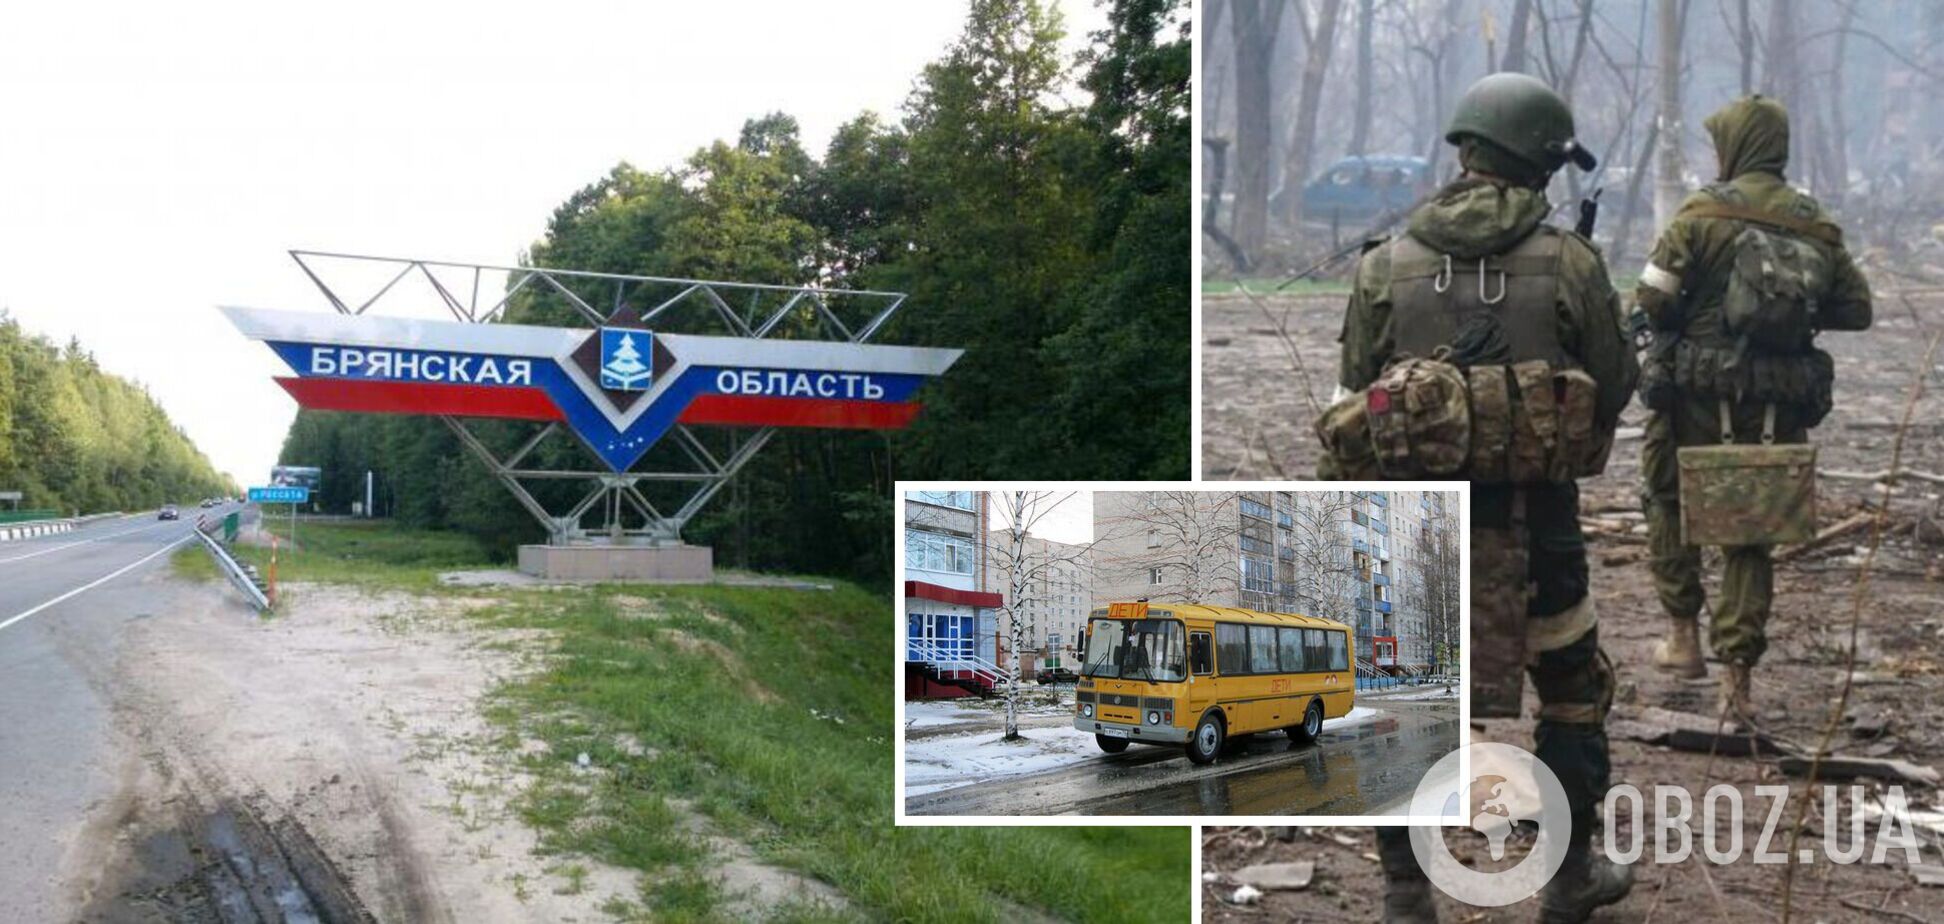 В России устроили новую провокацию: обстреляли школьный автобус и заявили о бое с 'украинской ДРГ', а затем оправдались